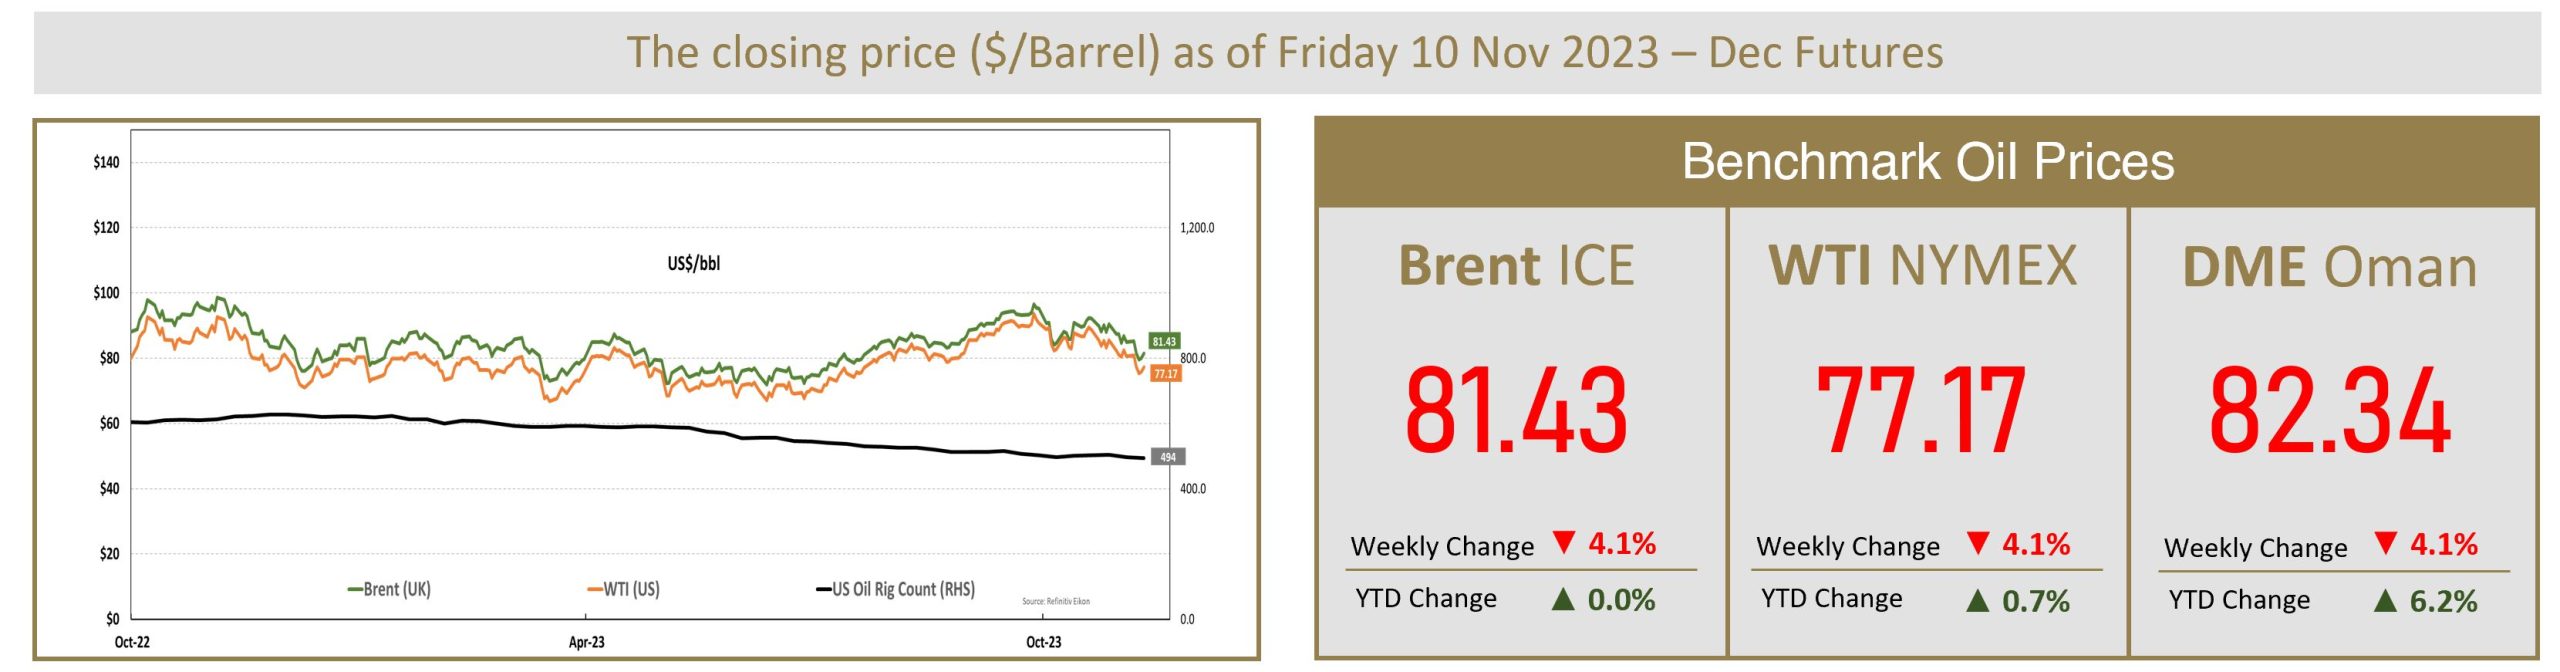 Benchmark Oil Prices 11 Nov 2023